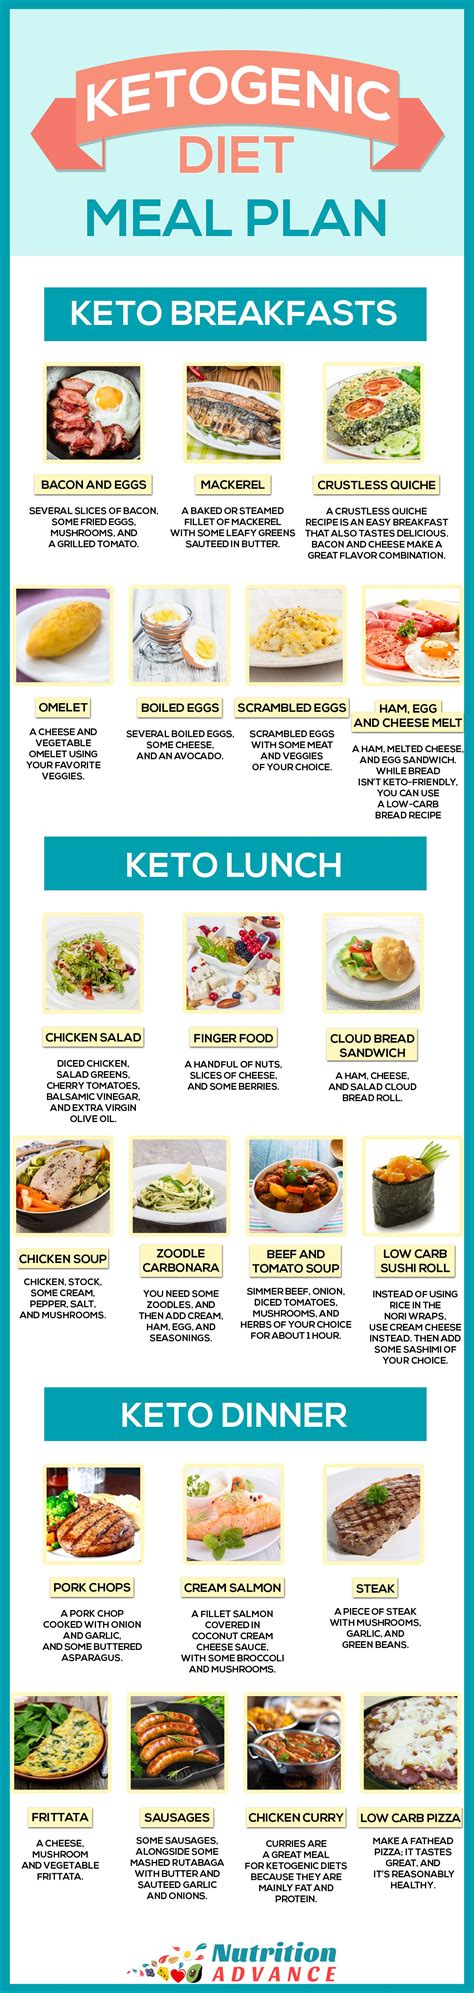 day ketogenic diet plan  menu  recipes shopping lists keto